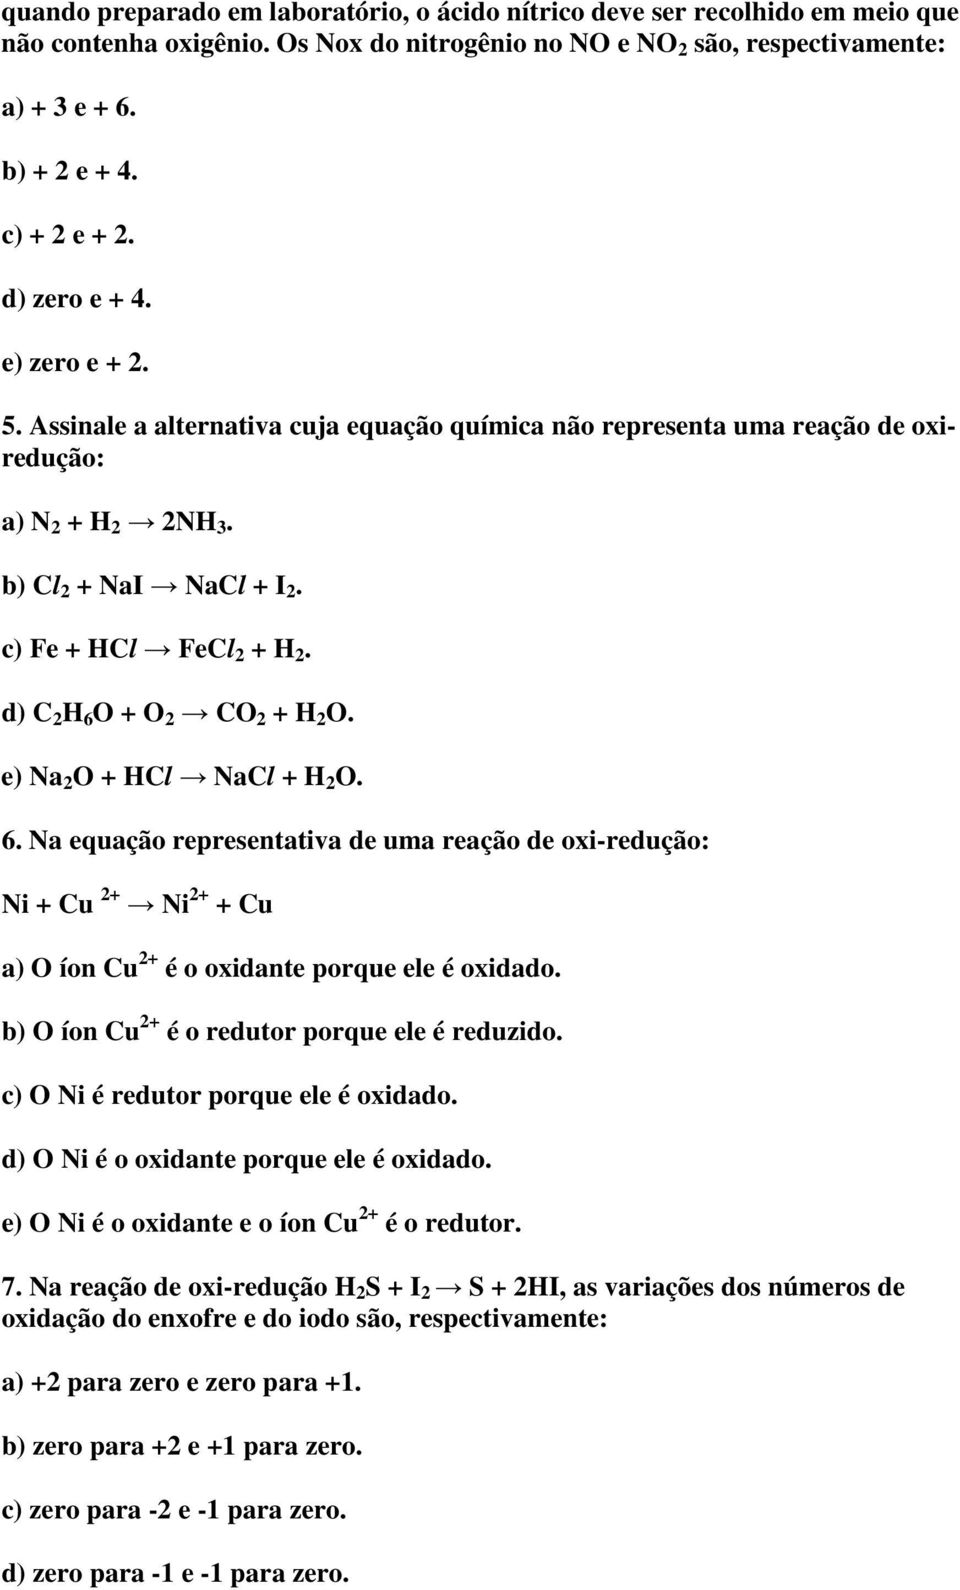 d) C 2 H 6 O + O 2 CO 2 + H 2 O. e) Na 2 O + HCl NaCl + H 2 O. 6. Na equação representativa de uma reação de oxi-redução: Ni + Cu 2+ Ni 2+ + Cu a) O íon Cu 2+ é o oxidante porque ele é oxidado.